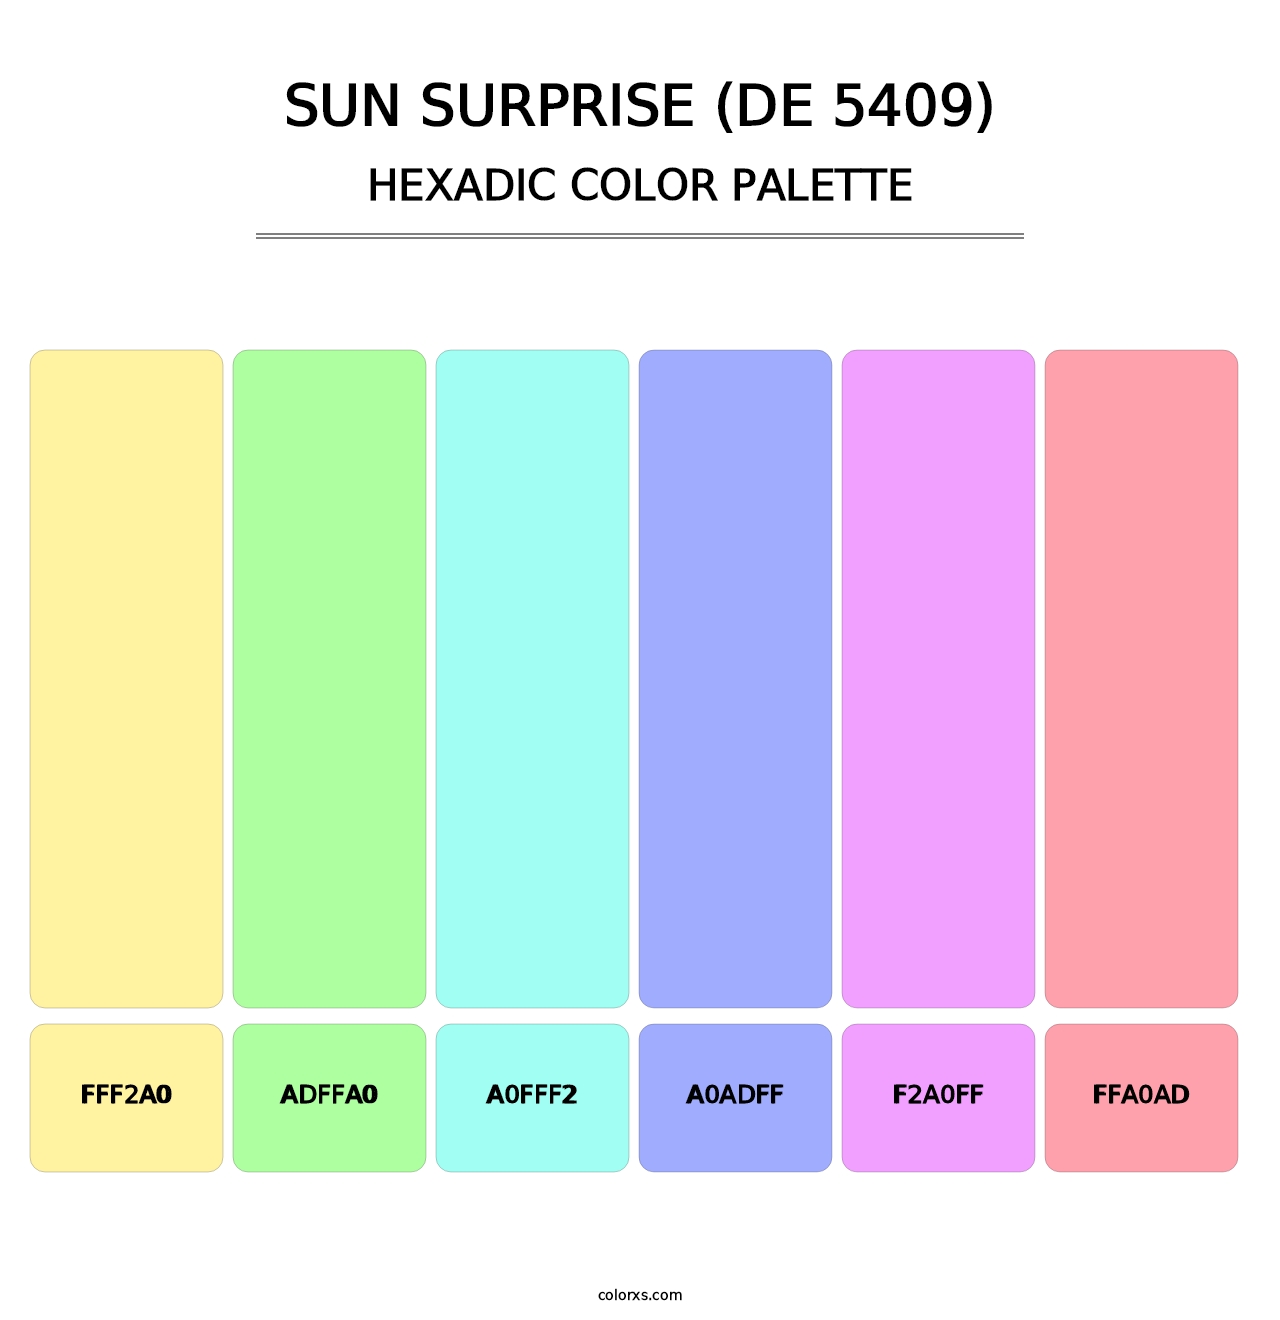 Sun Surprise (DE 5409) - Hexadic Color Palette